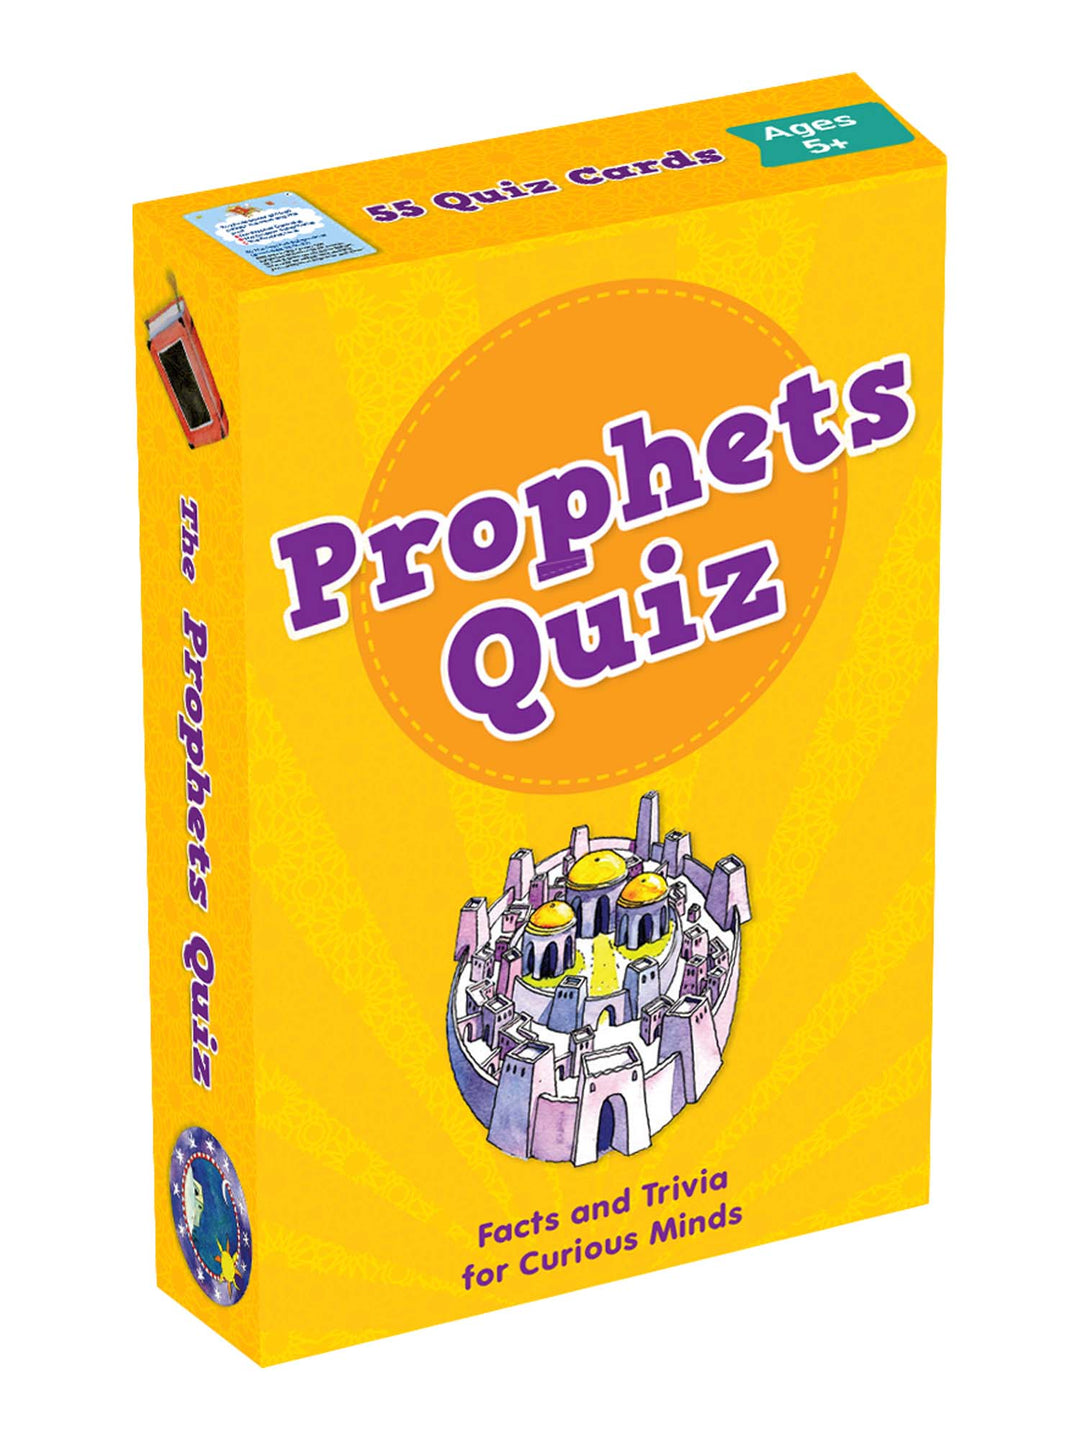 Islamic Quiz Cards